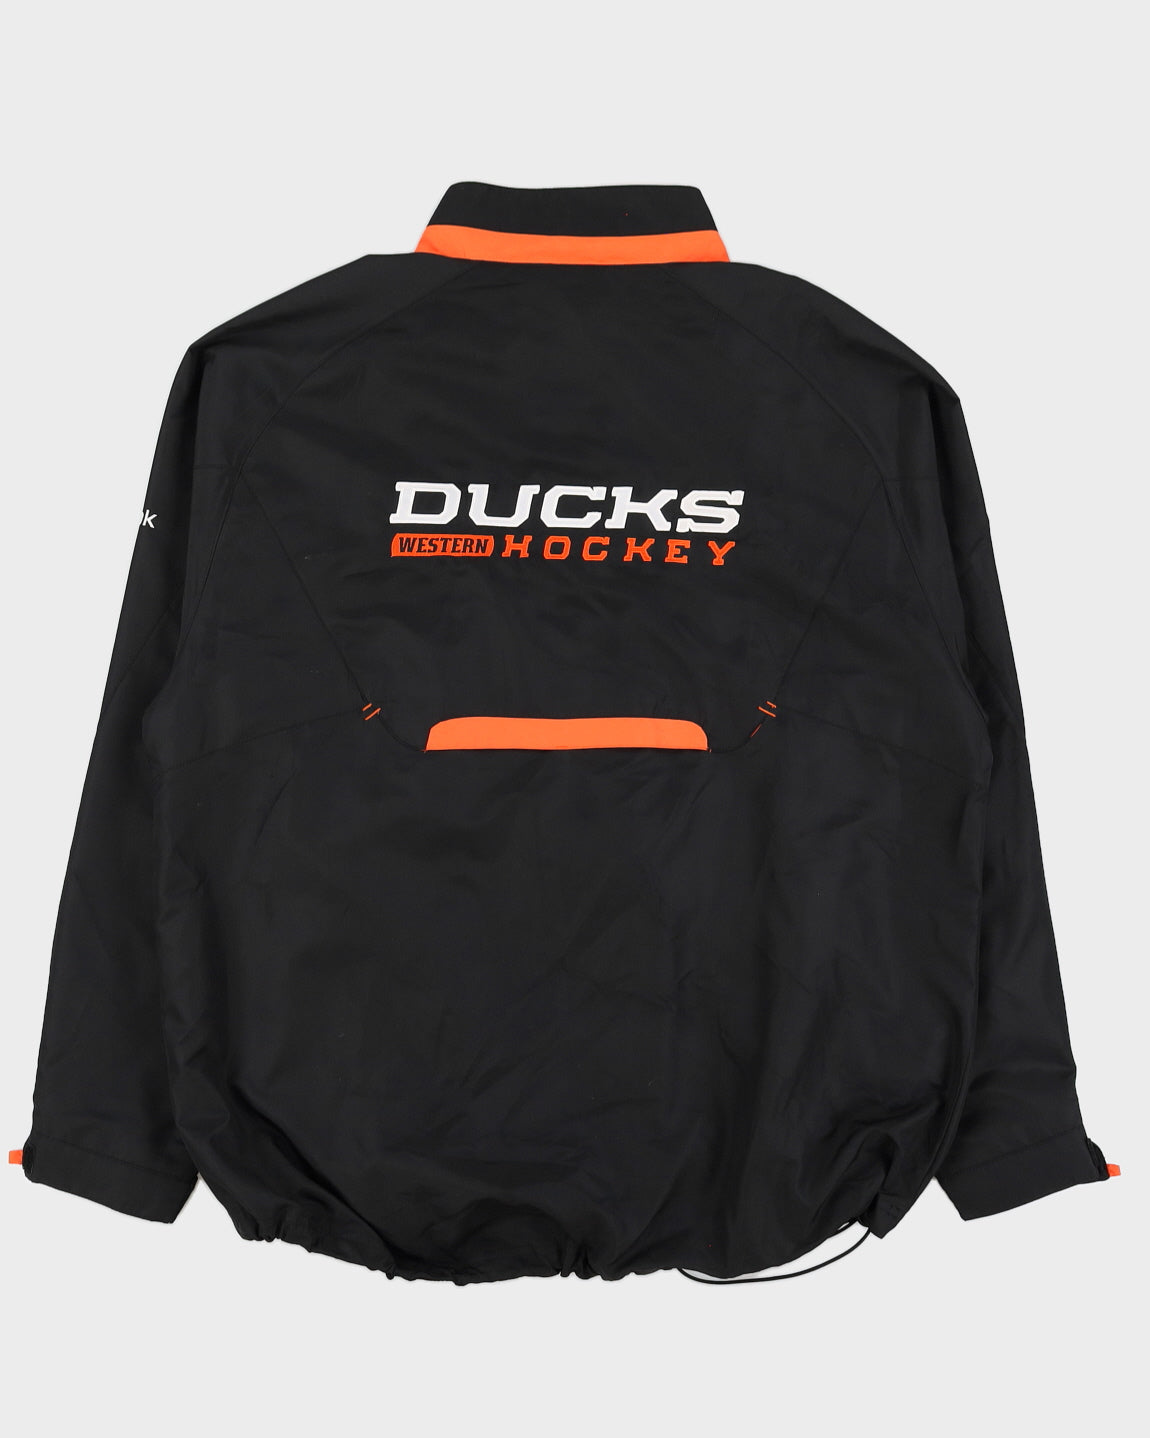 Reebok NHL Anaheim Ducks Jacket - L